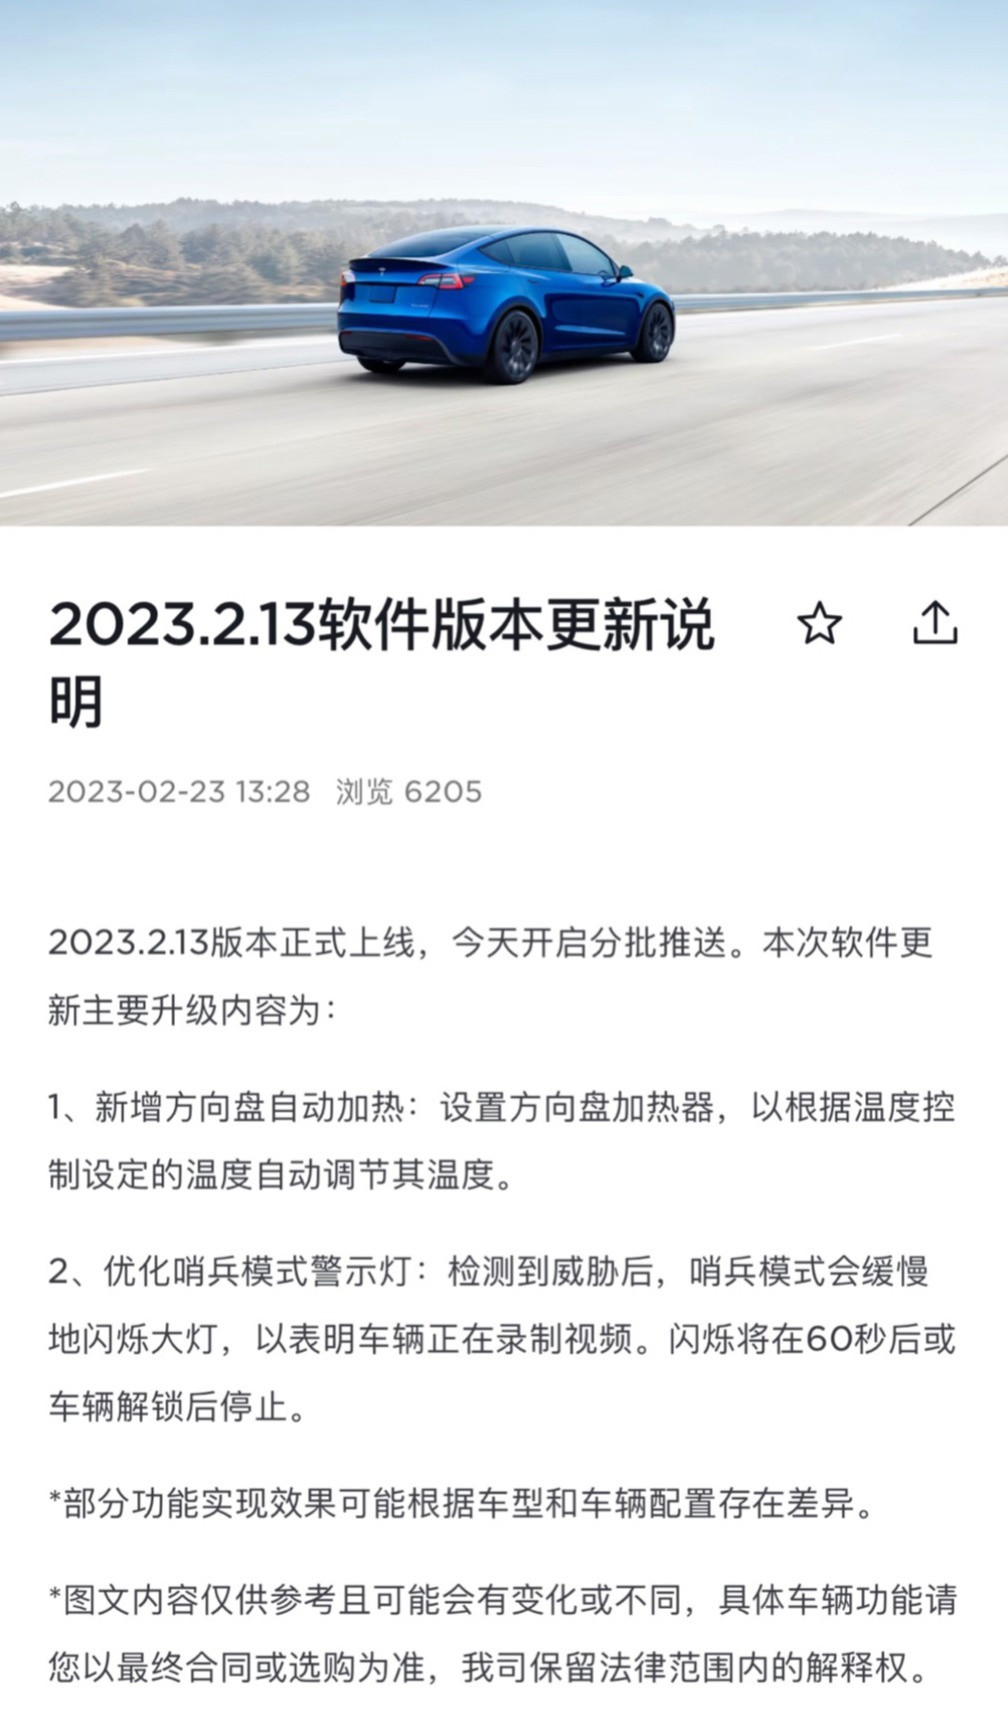 特斯拉 2023.2.13 软件版本开启推送, 新增方向盘自动加热功能